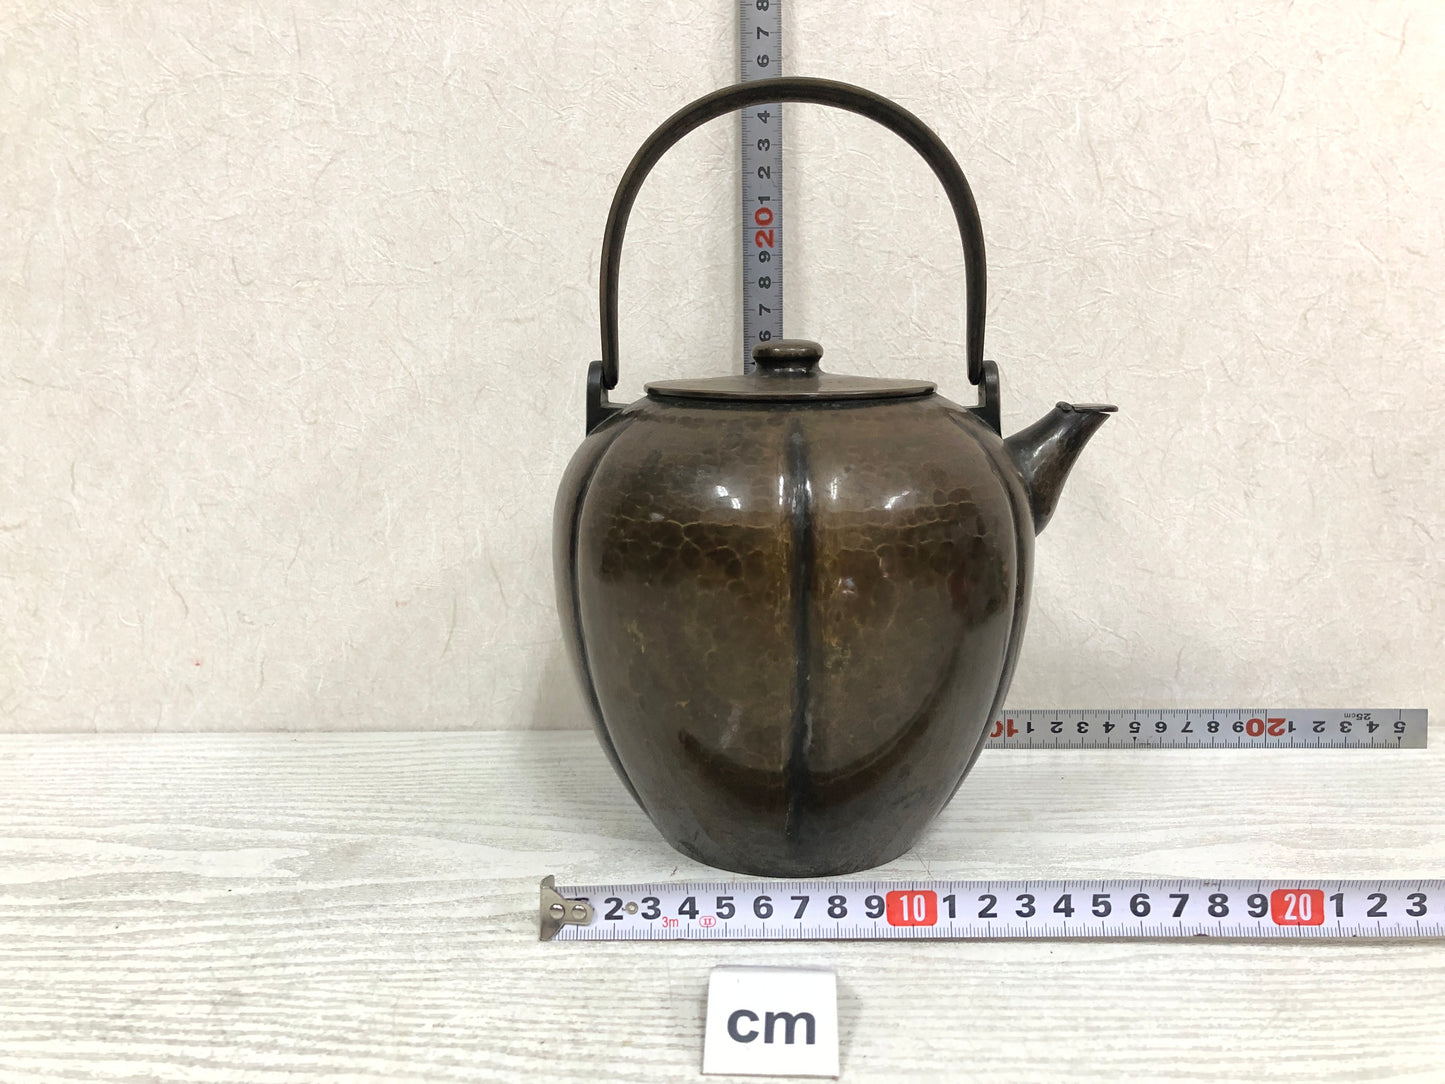 Y3864 KETTLE Copper Gourd shape hammered mark pot Japanese teapot Japan antique